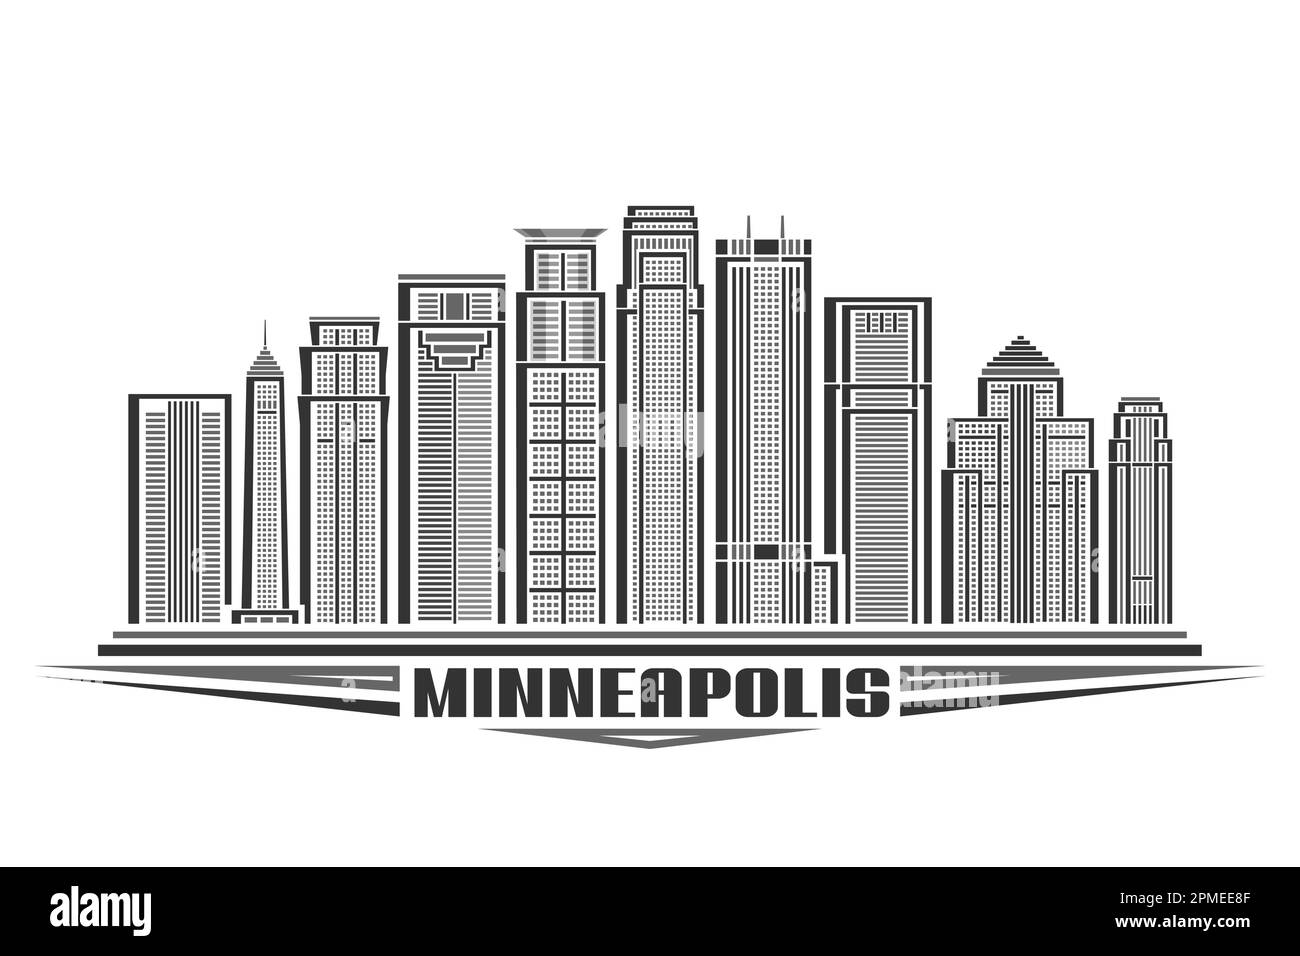 Illustrazione vettoriale di Minneapolis, segno orizzontale con disegno lineare minneapolis City scape, linea urbana americana art concept con lettere decorative Illustrazione Vettoriale